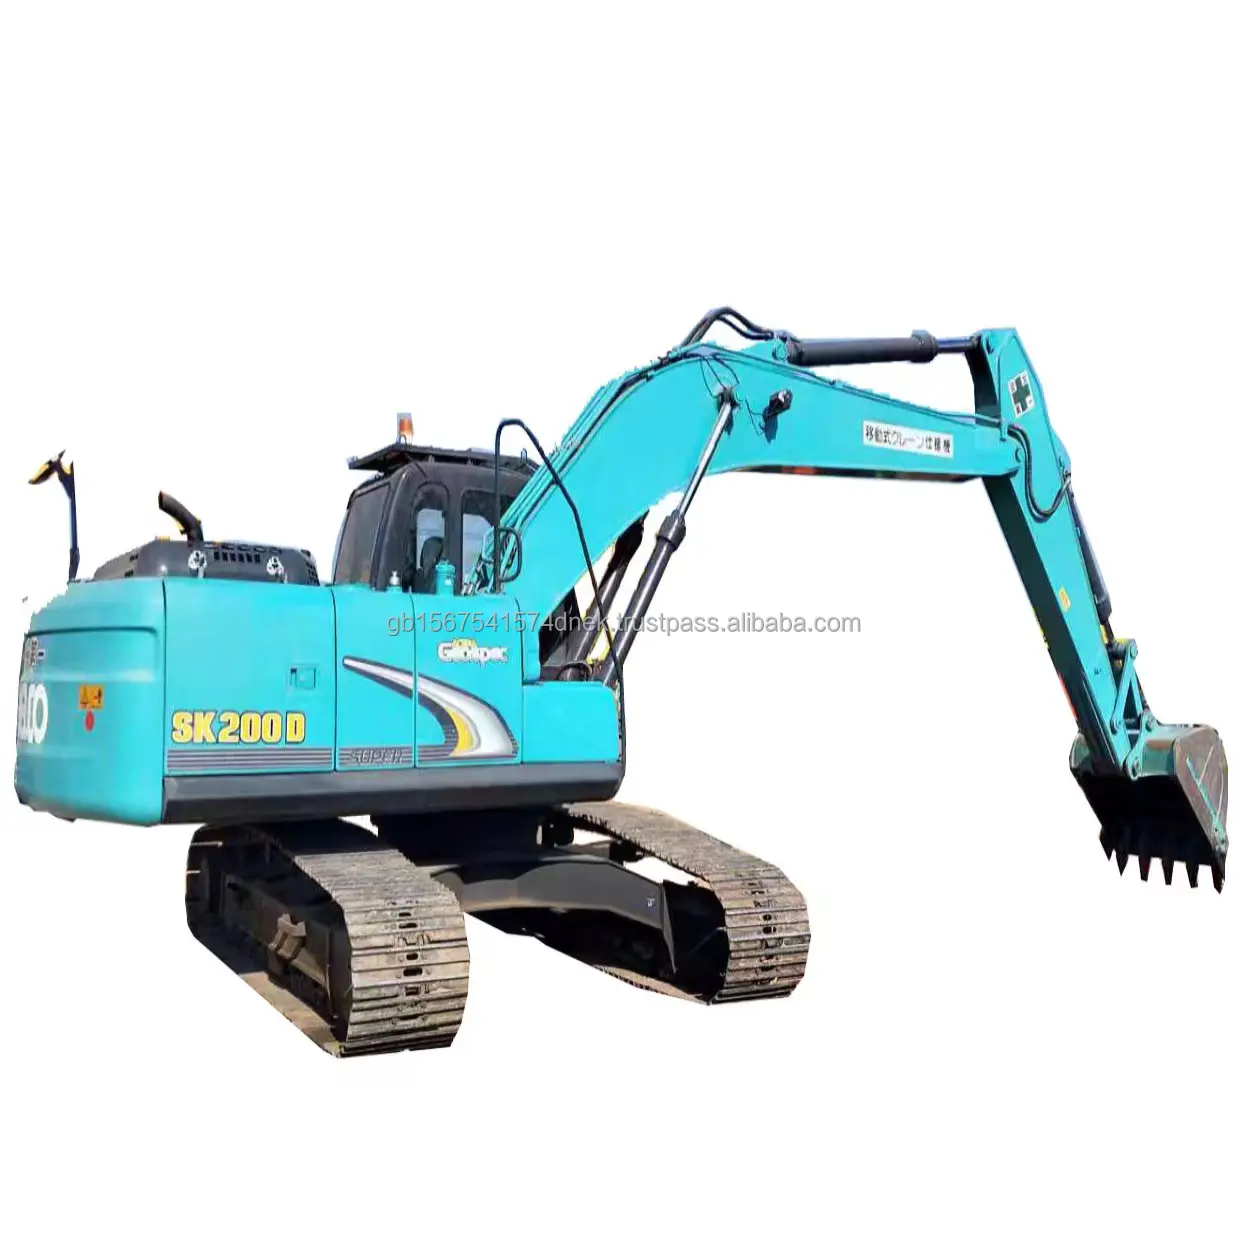 Kobelco SK200D Low price 100% ready Low working hour Caterpillar Doosan Volvo Second Hand Crawler Excavator